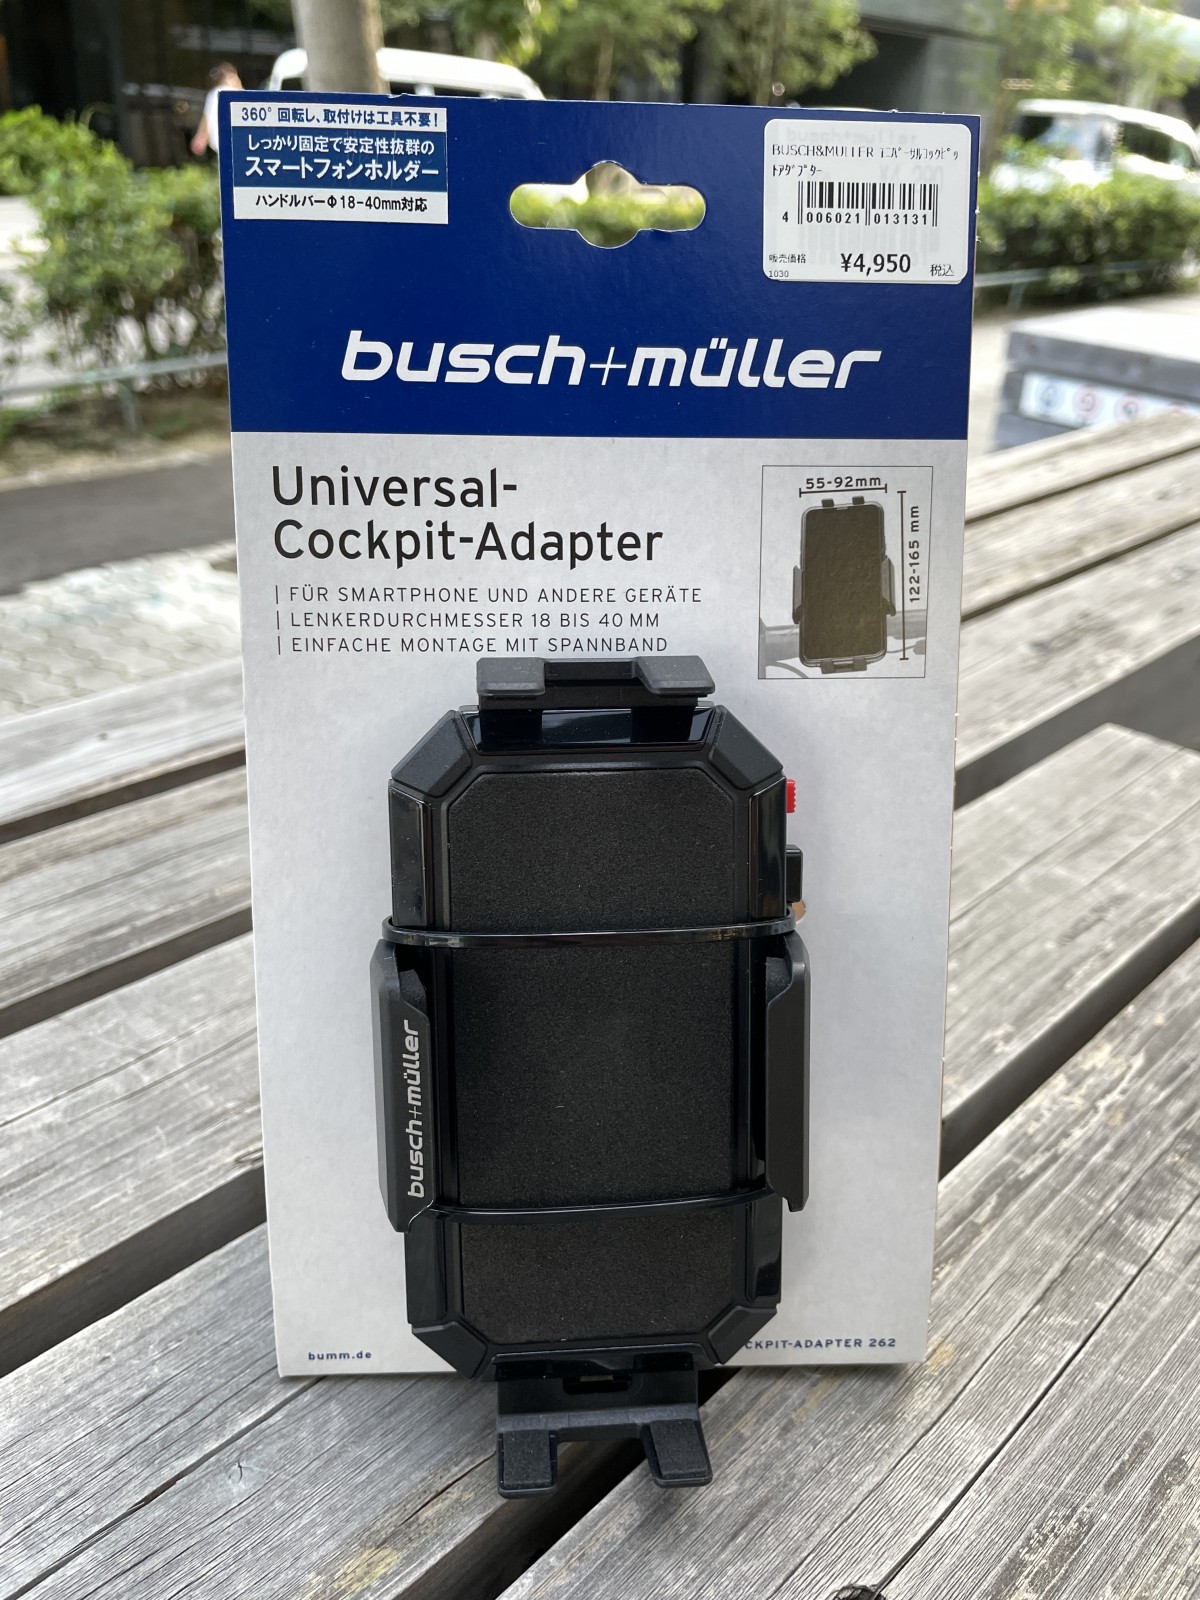 busch+muller Universal Cockpit-Adapter